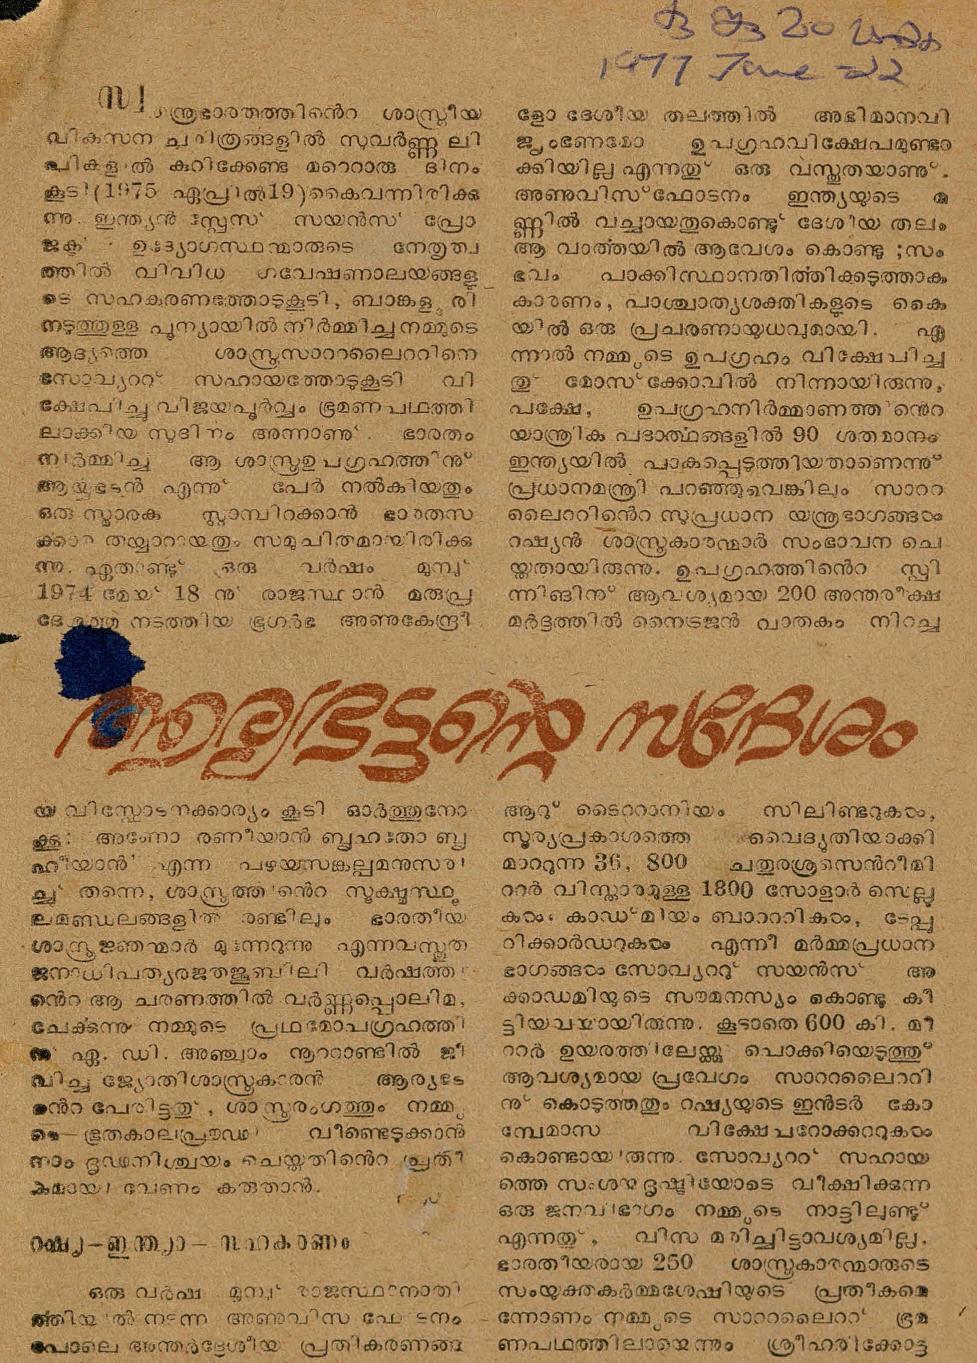 1977 - ആര്യഭട്ടൻ്റെ സന്ദേശം - സി. കെ. മൂസ്സത്